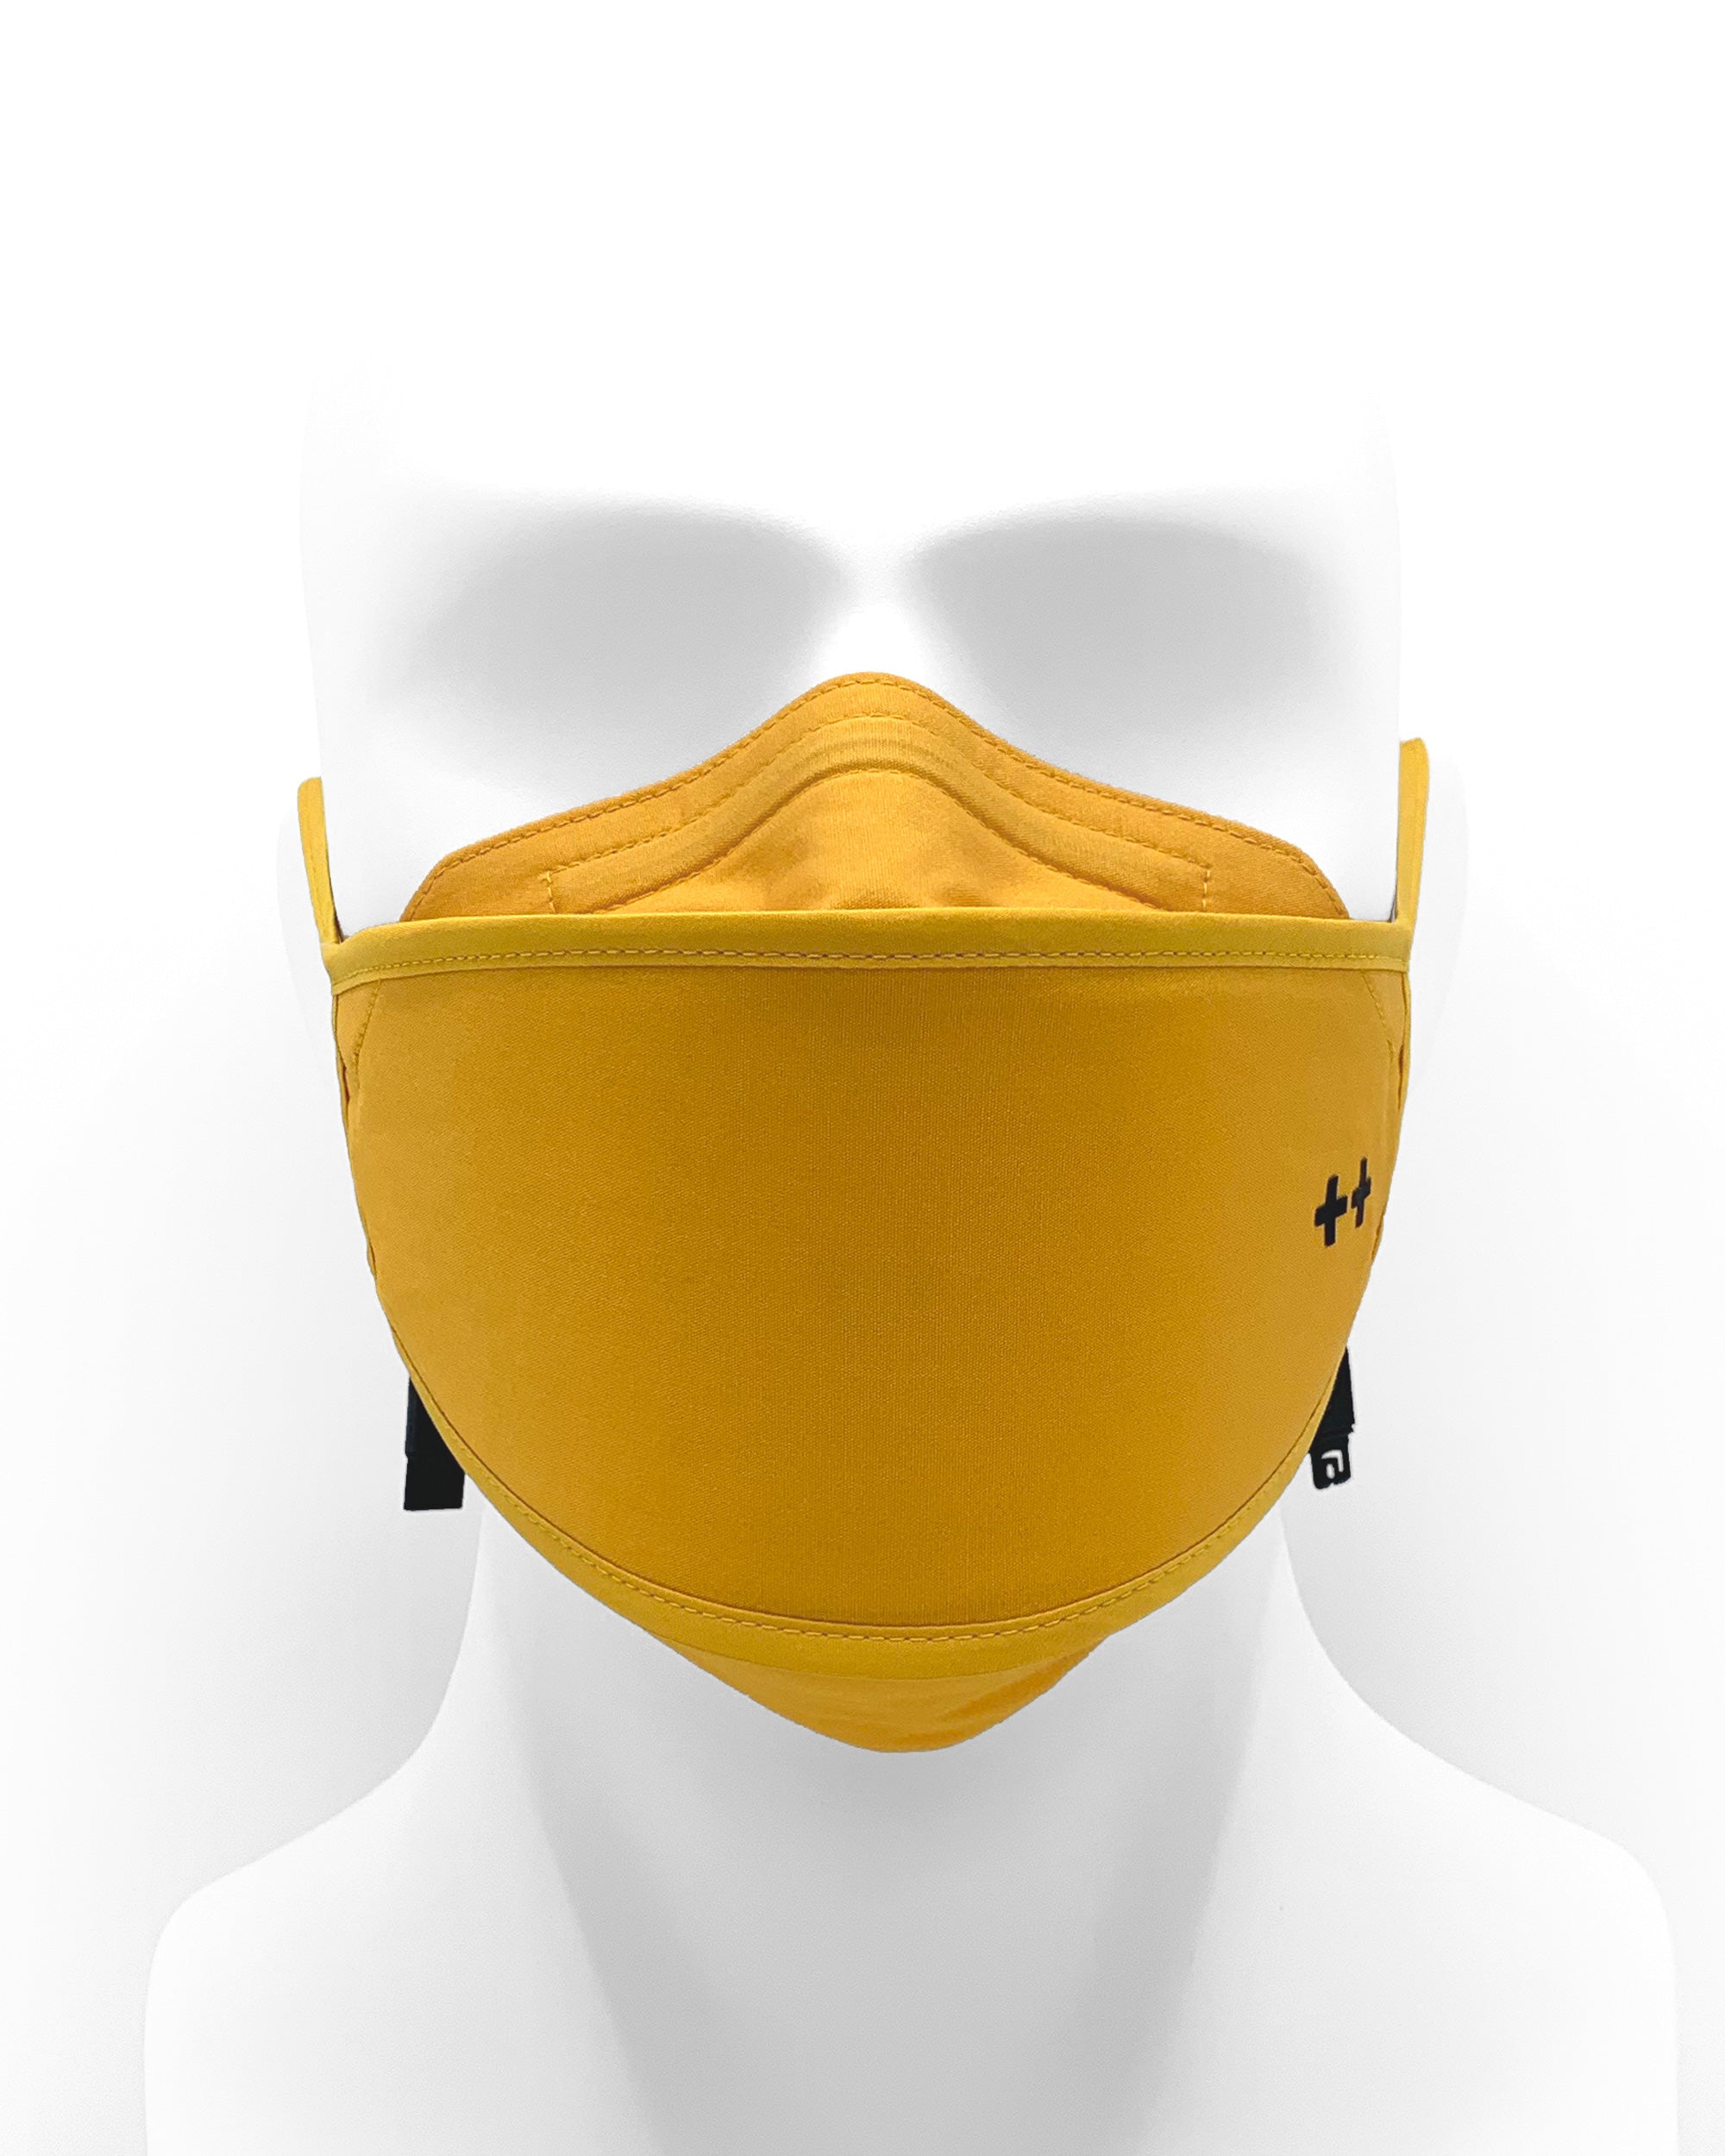 AVITTY Hybrid Mask Reusable Kit Honey Butter Yellow 3D Fit Child Image 4